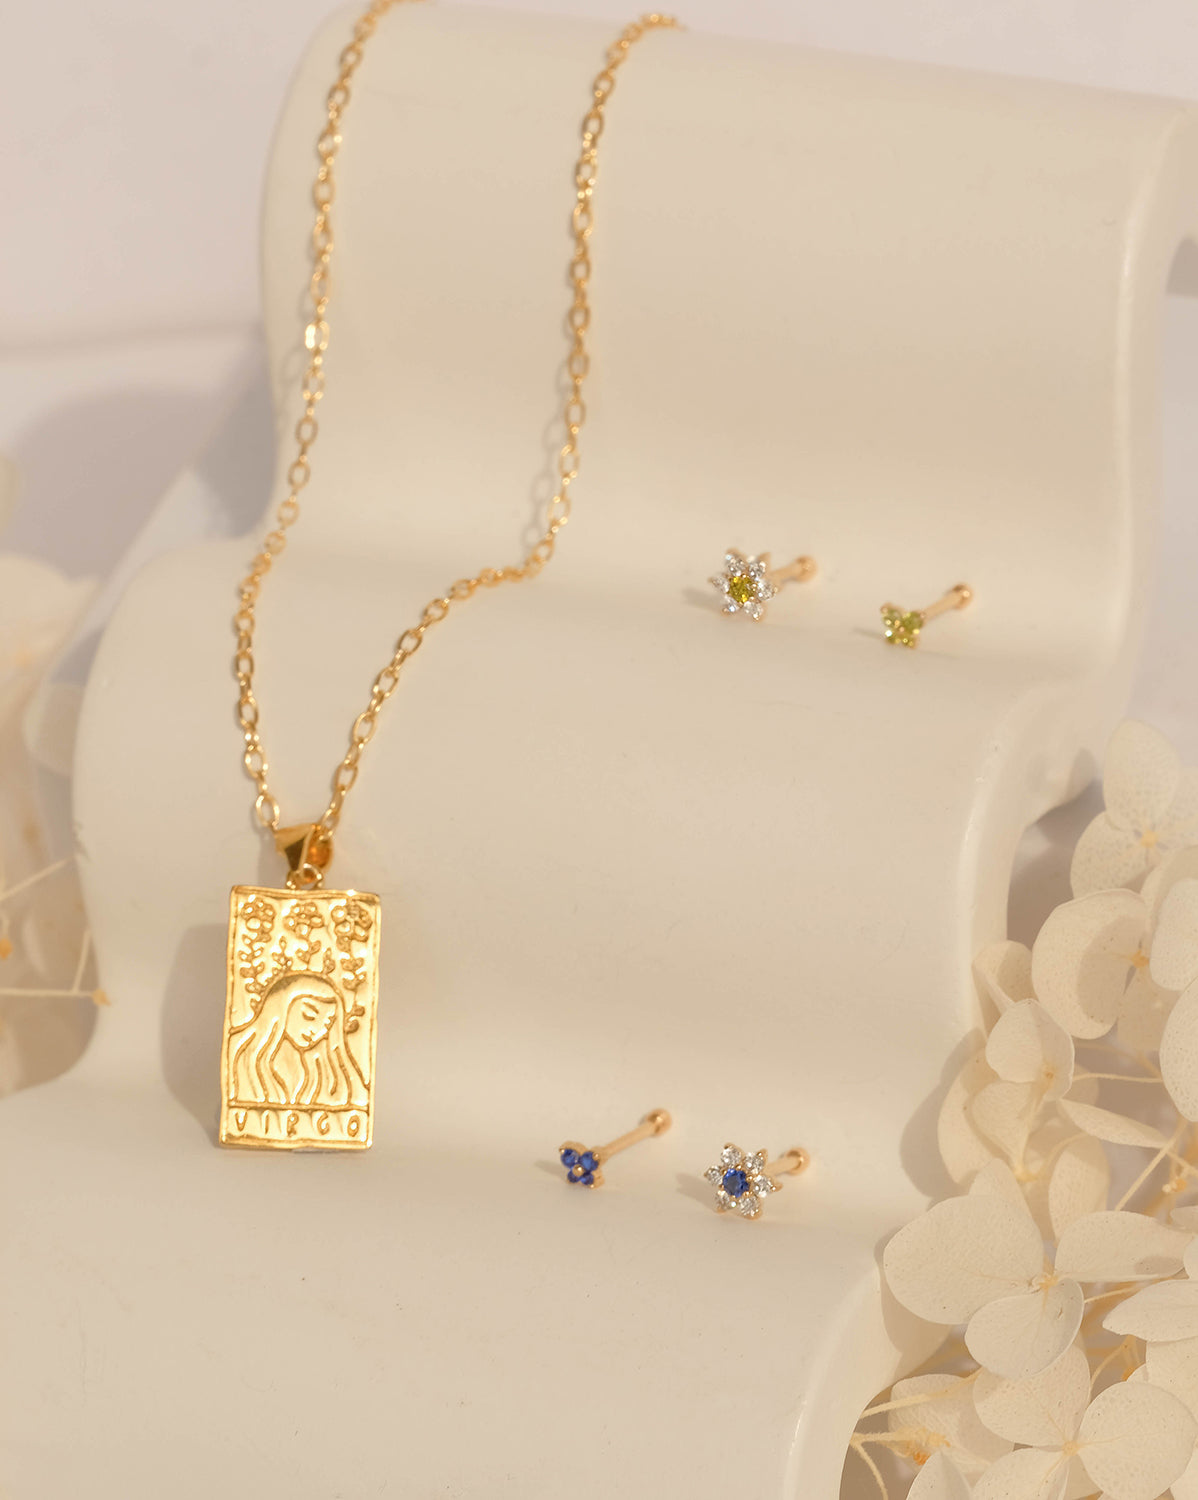 Virgo Zodiac Necklace - S-kin Studio Jewelry | Minimal Jewellery That Lasts.